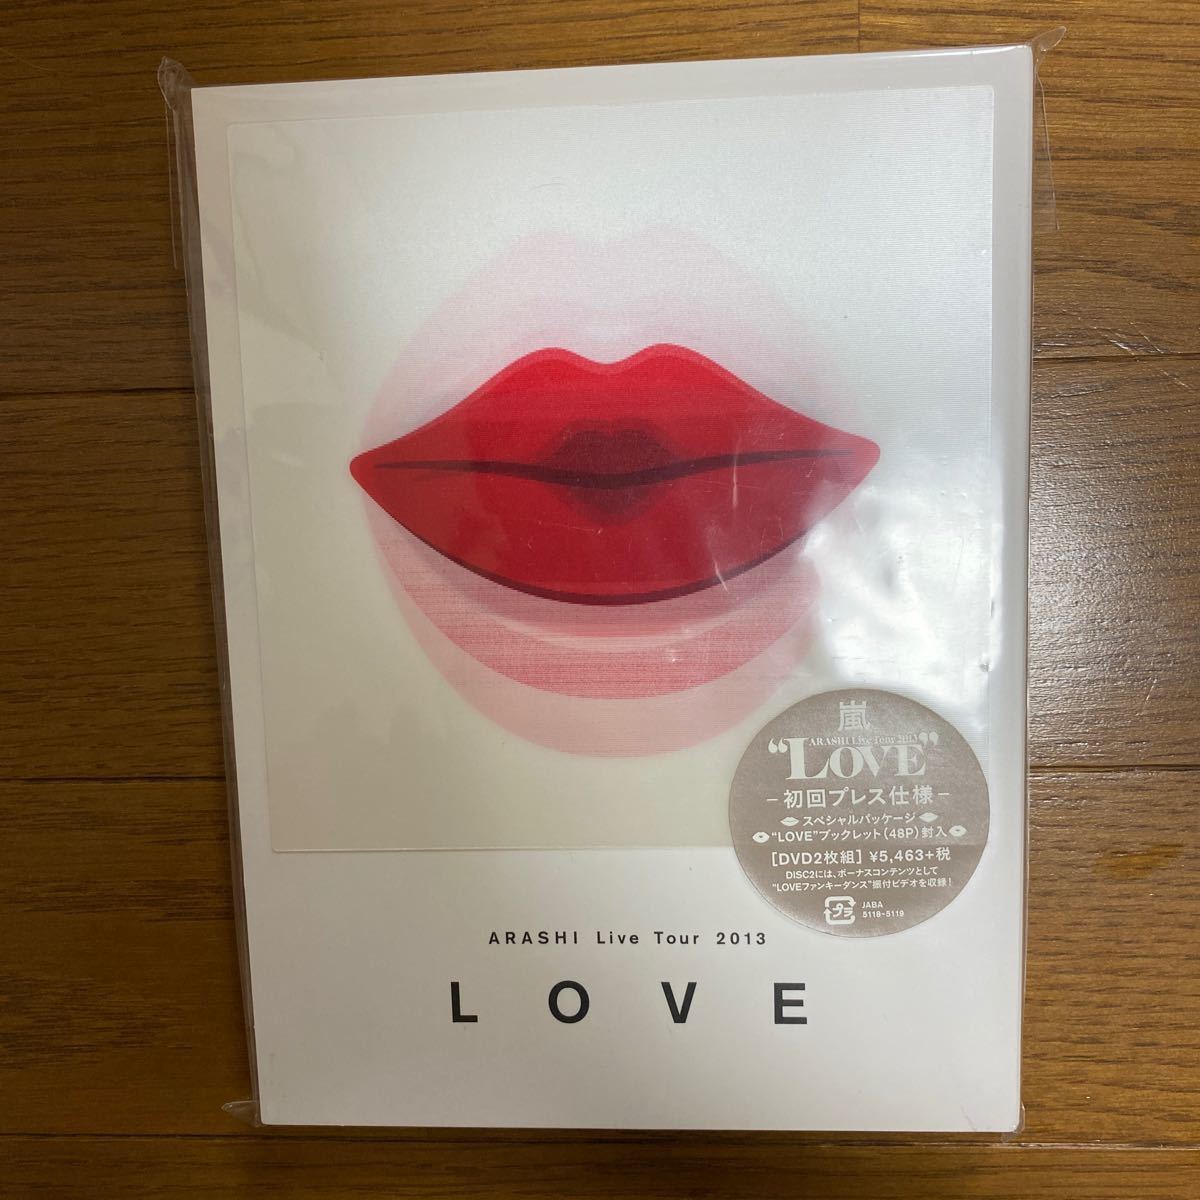 嵐 Live tour 2013 LOVE DVD - ミュージック